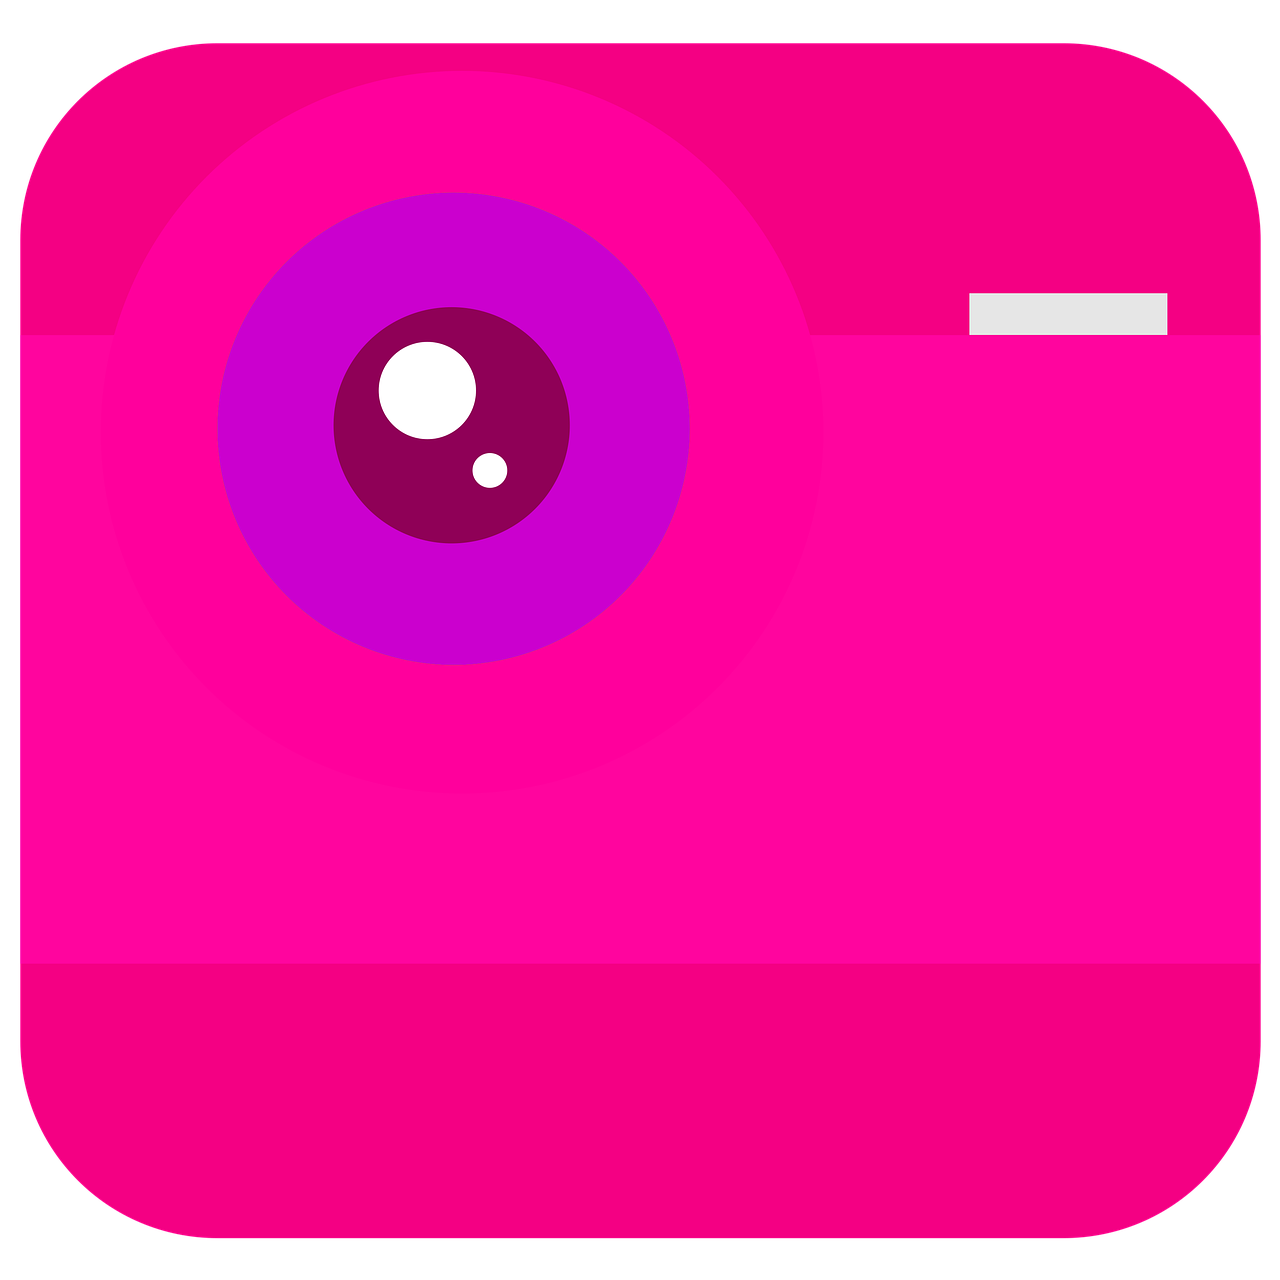 app icon  camera icon  camera launcher icon free photo